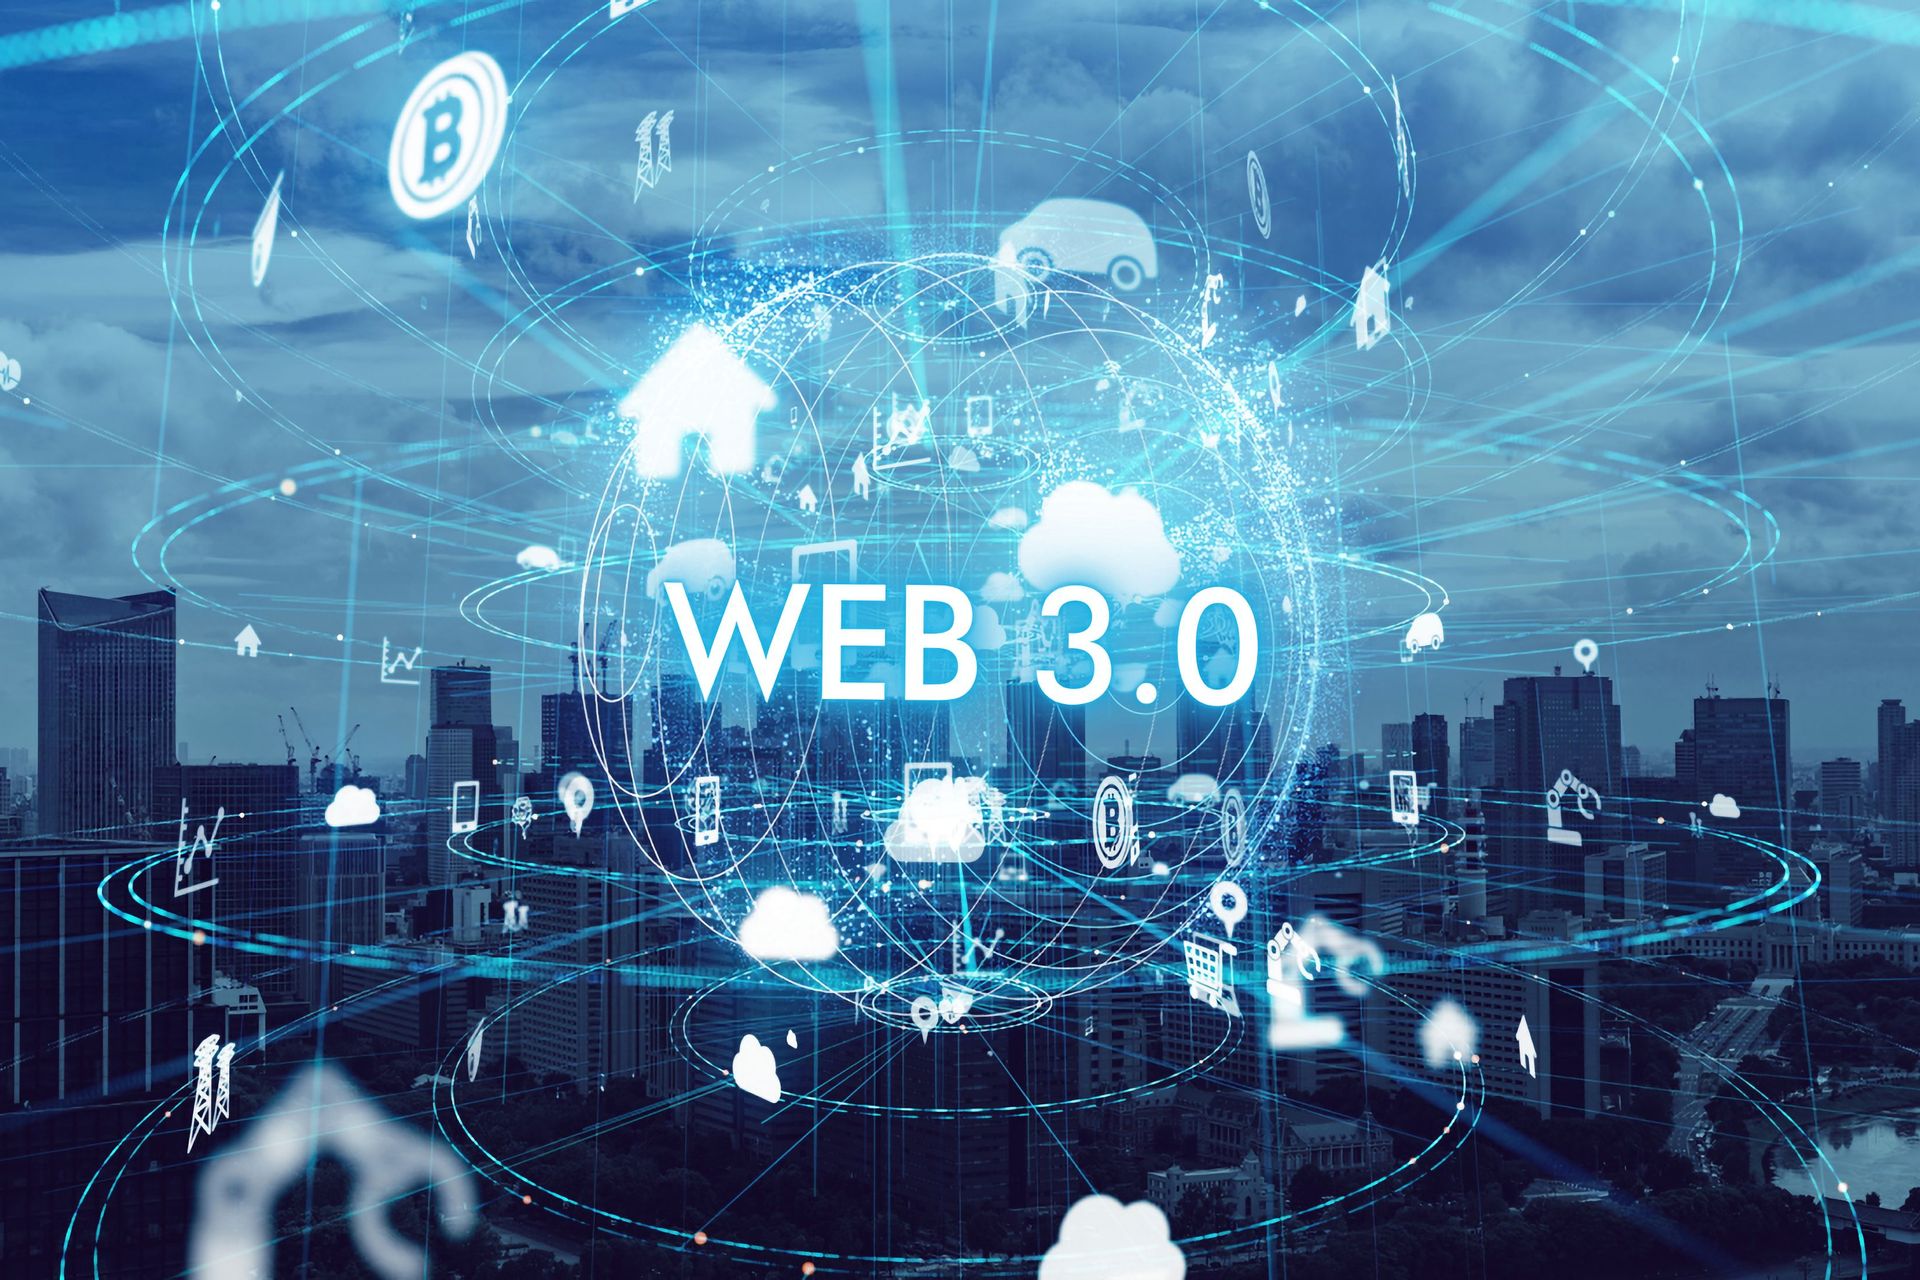 Το Web 3.0 και το Metaverse θα αντιπροσωπεύουν πραγματικά το μέλλον του τεχνολογικού ανθρώπου και το μέλλον του Διαδικτύου